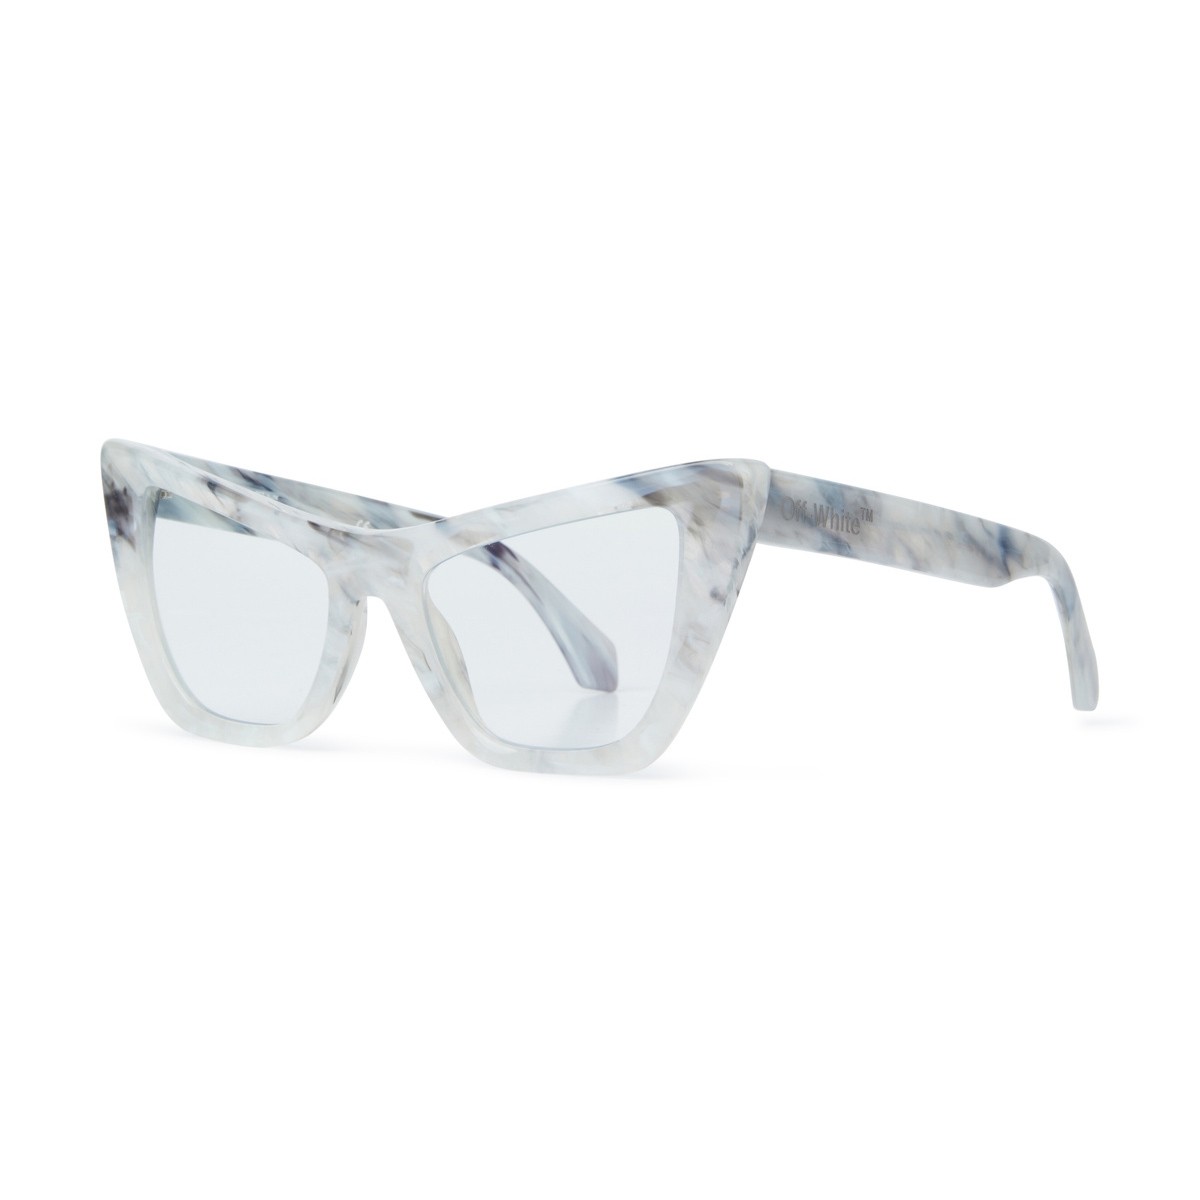 Off-White OPTICAL STYLE 11 Unisex eyeglasses